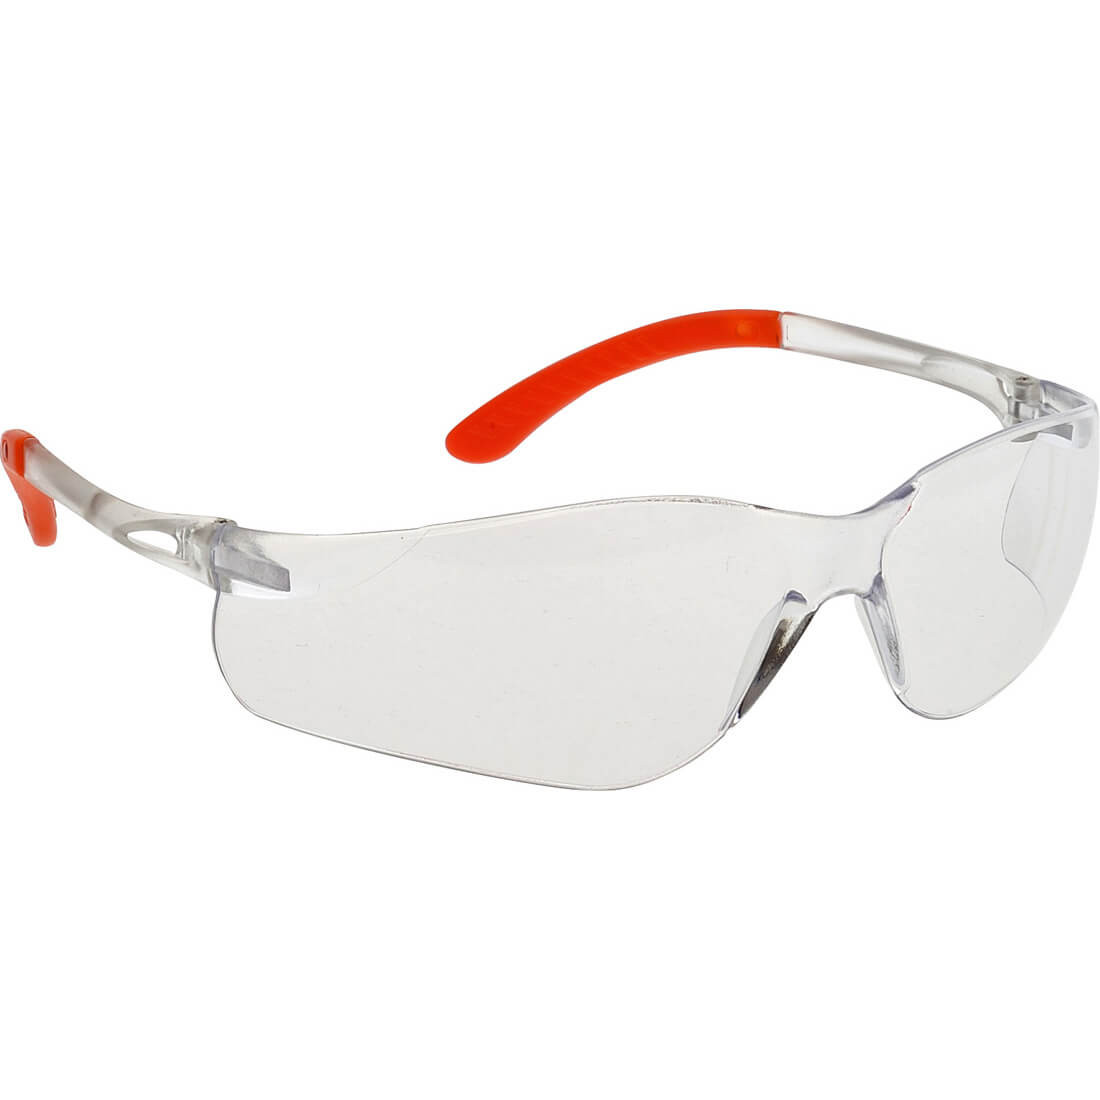 Gafas Pan View - Equipamientos de protección personal